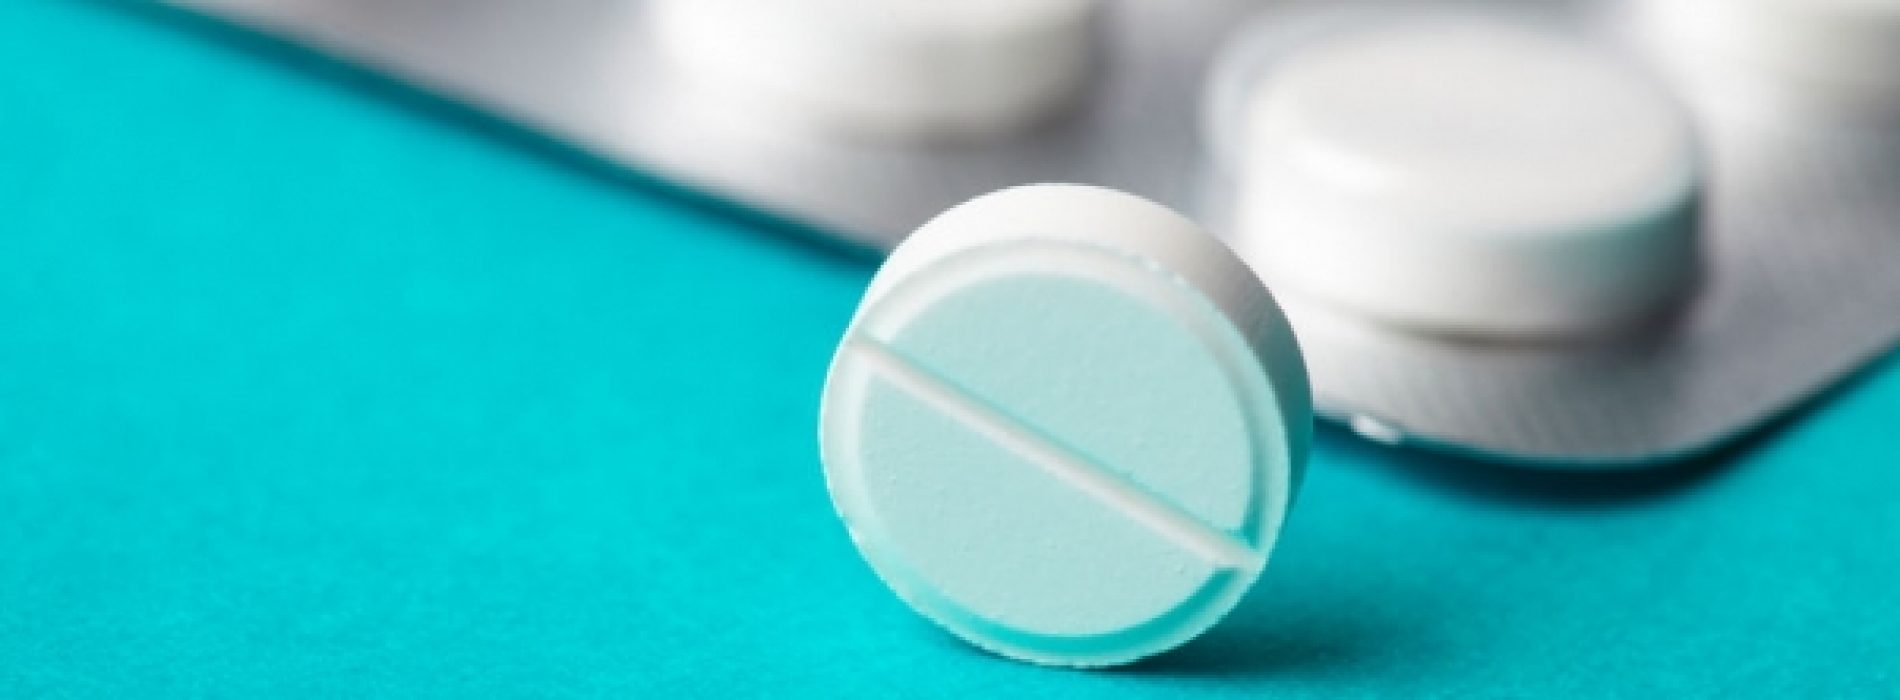 Zweer aspirine af: onderzoek zegt dat zelfs “kleine doses” hersenbloedingen kunnen veroorzaken